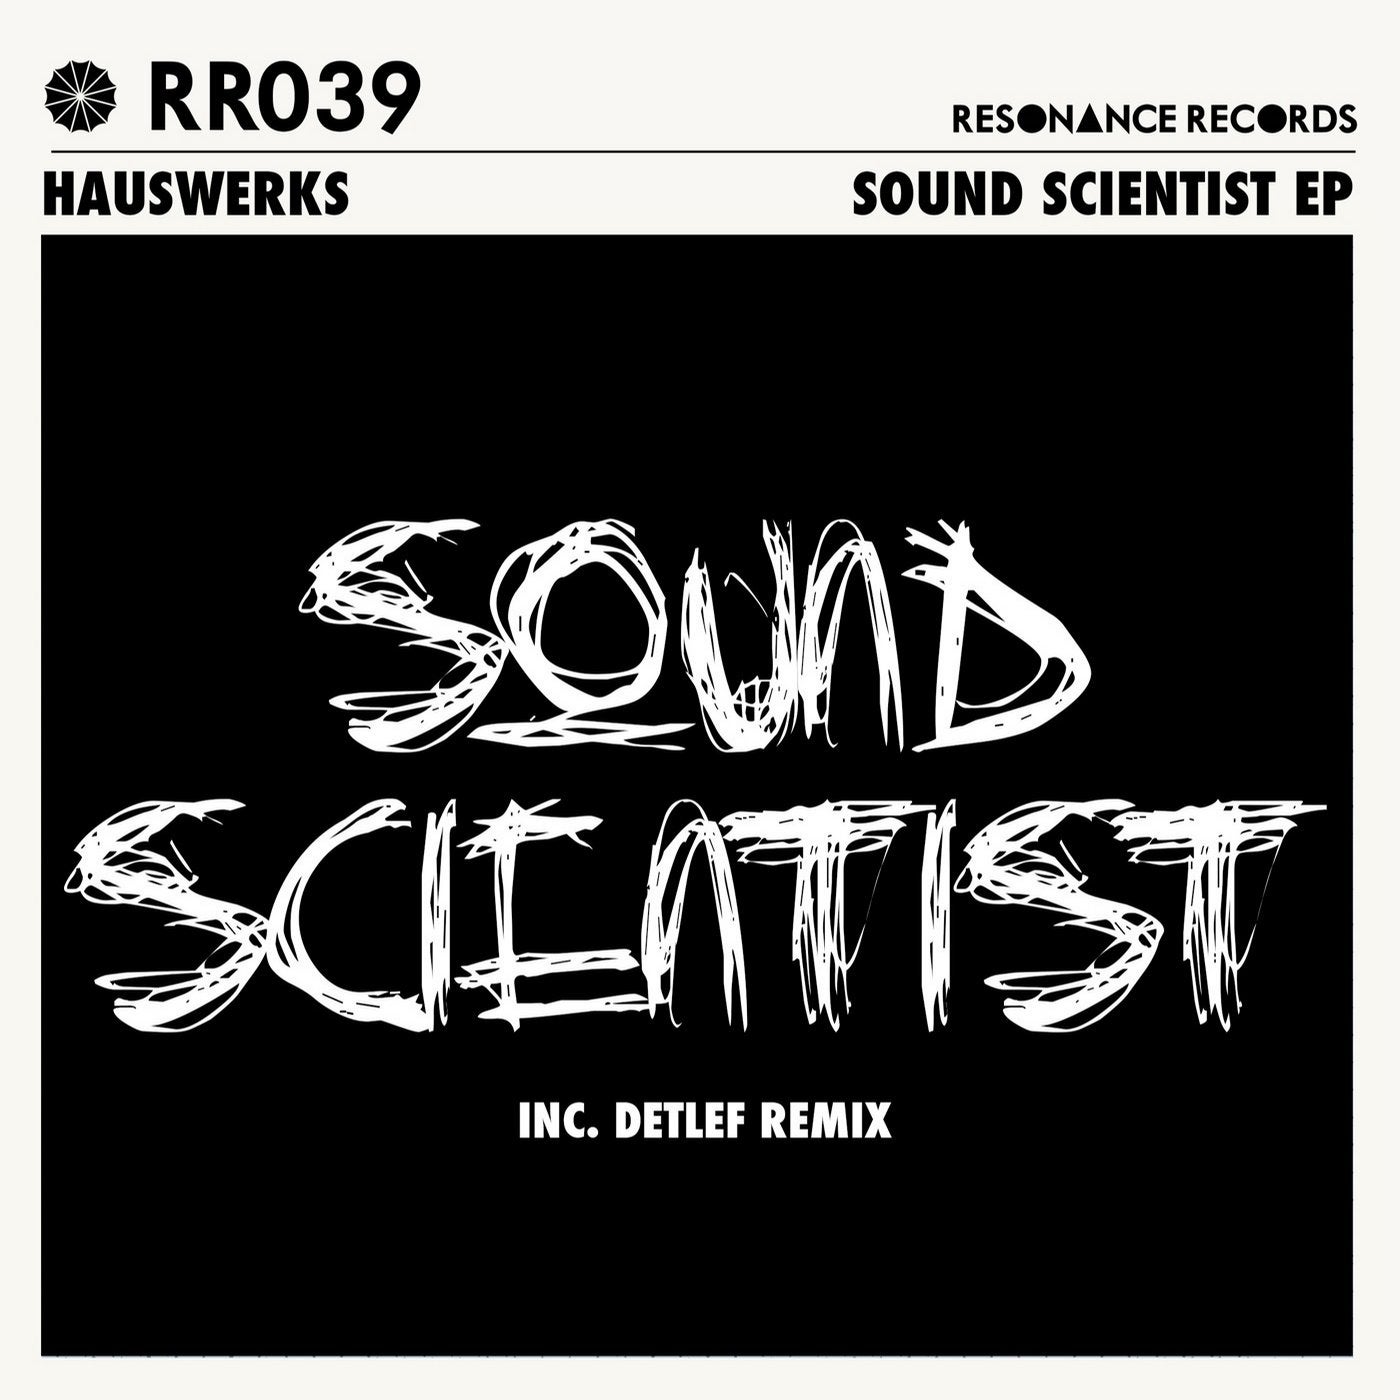 The Sound Scientist EP